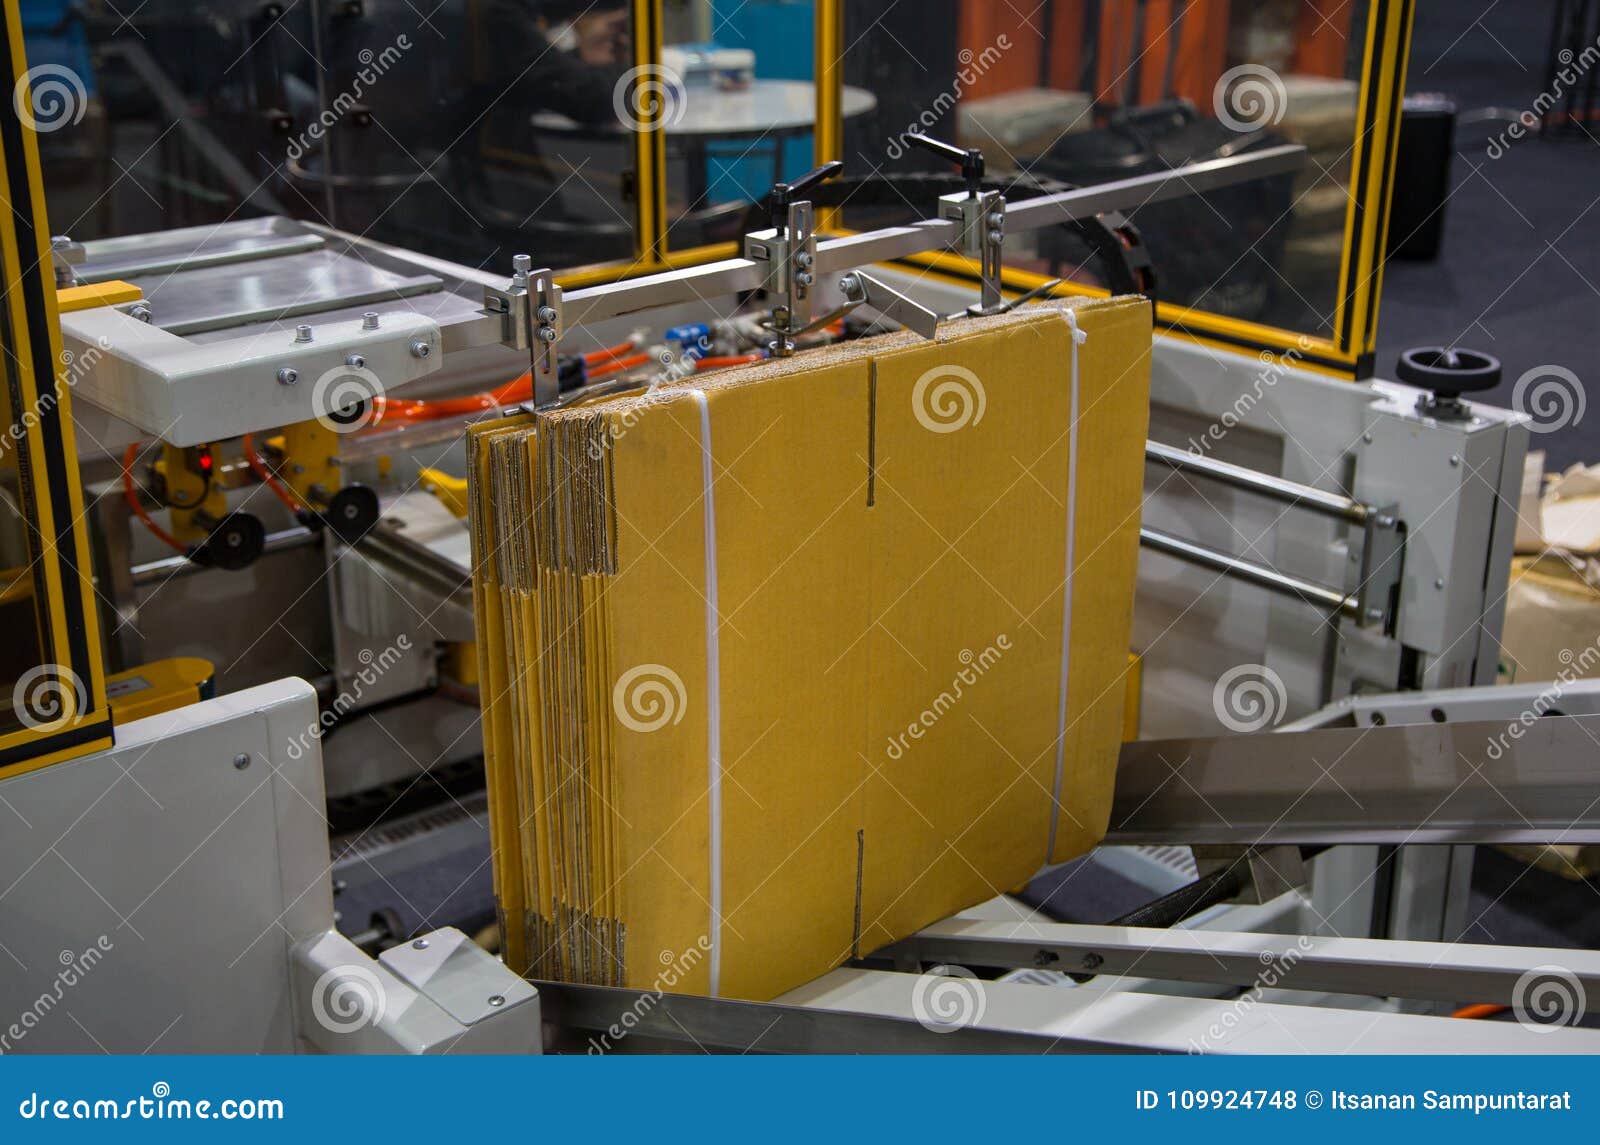 automatic carton erector